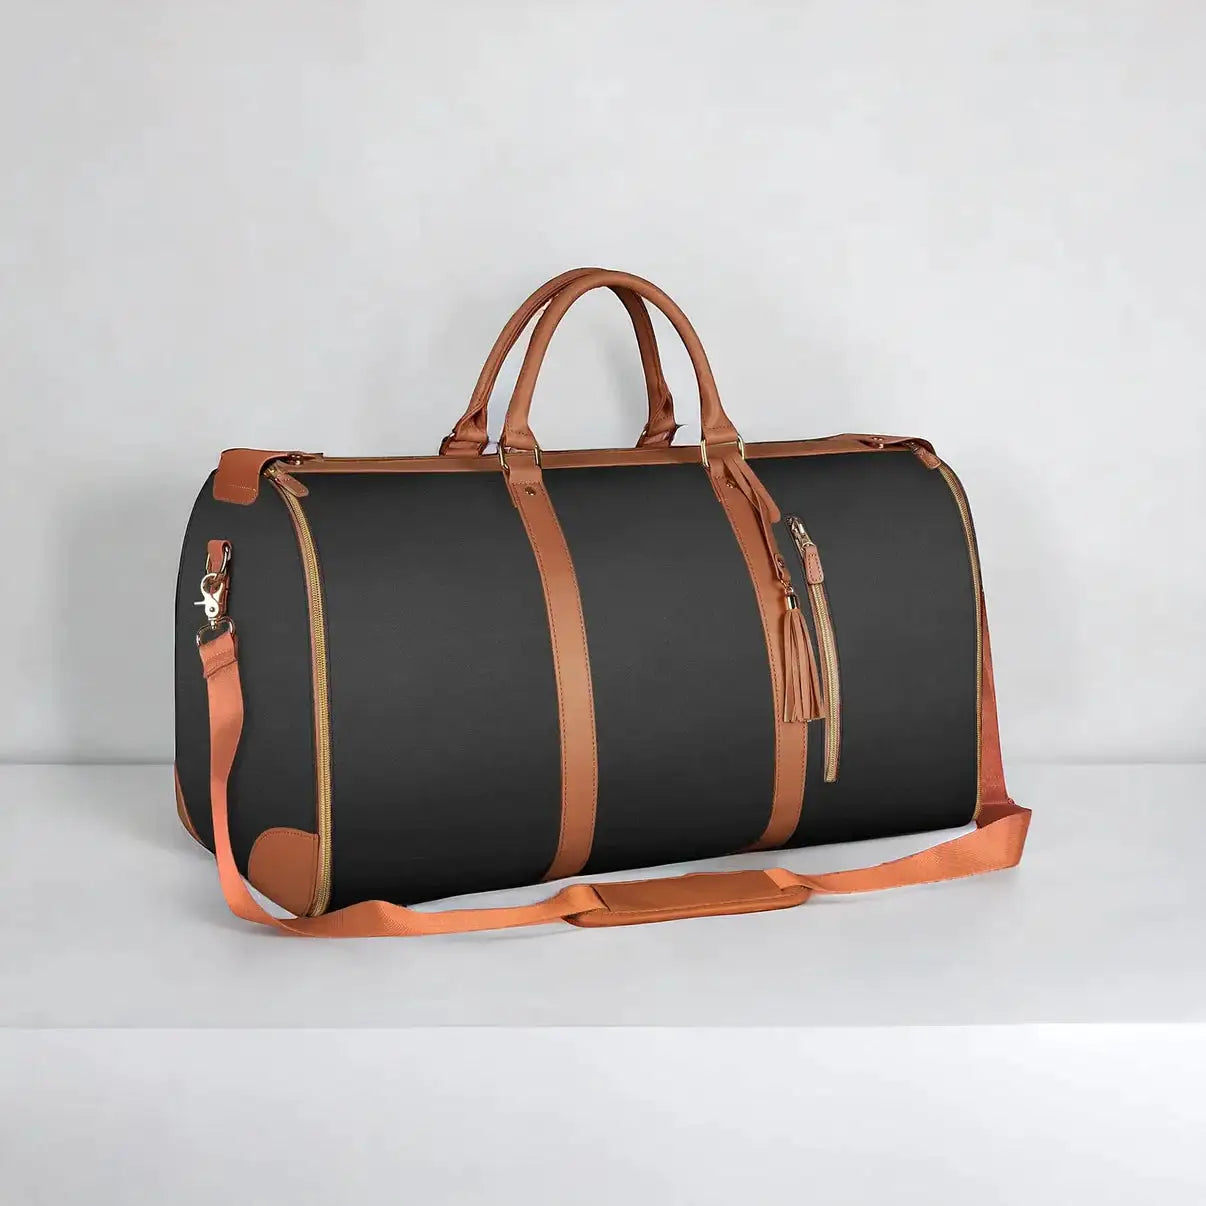 DashPak Travel Bag